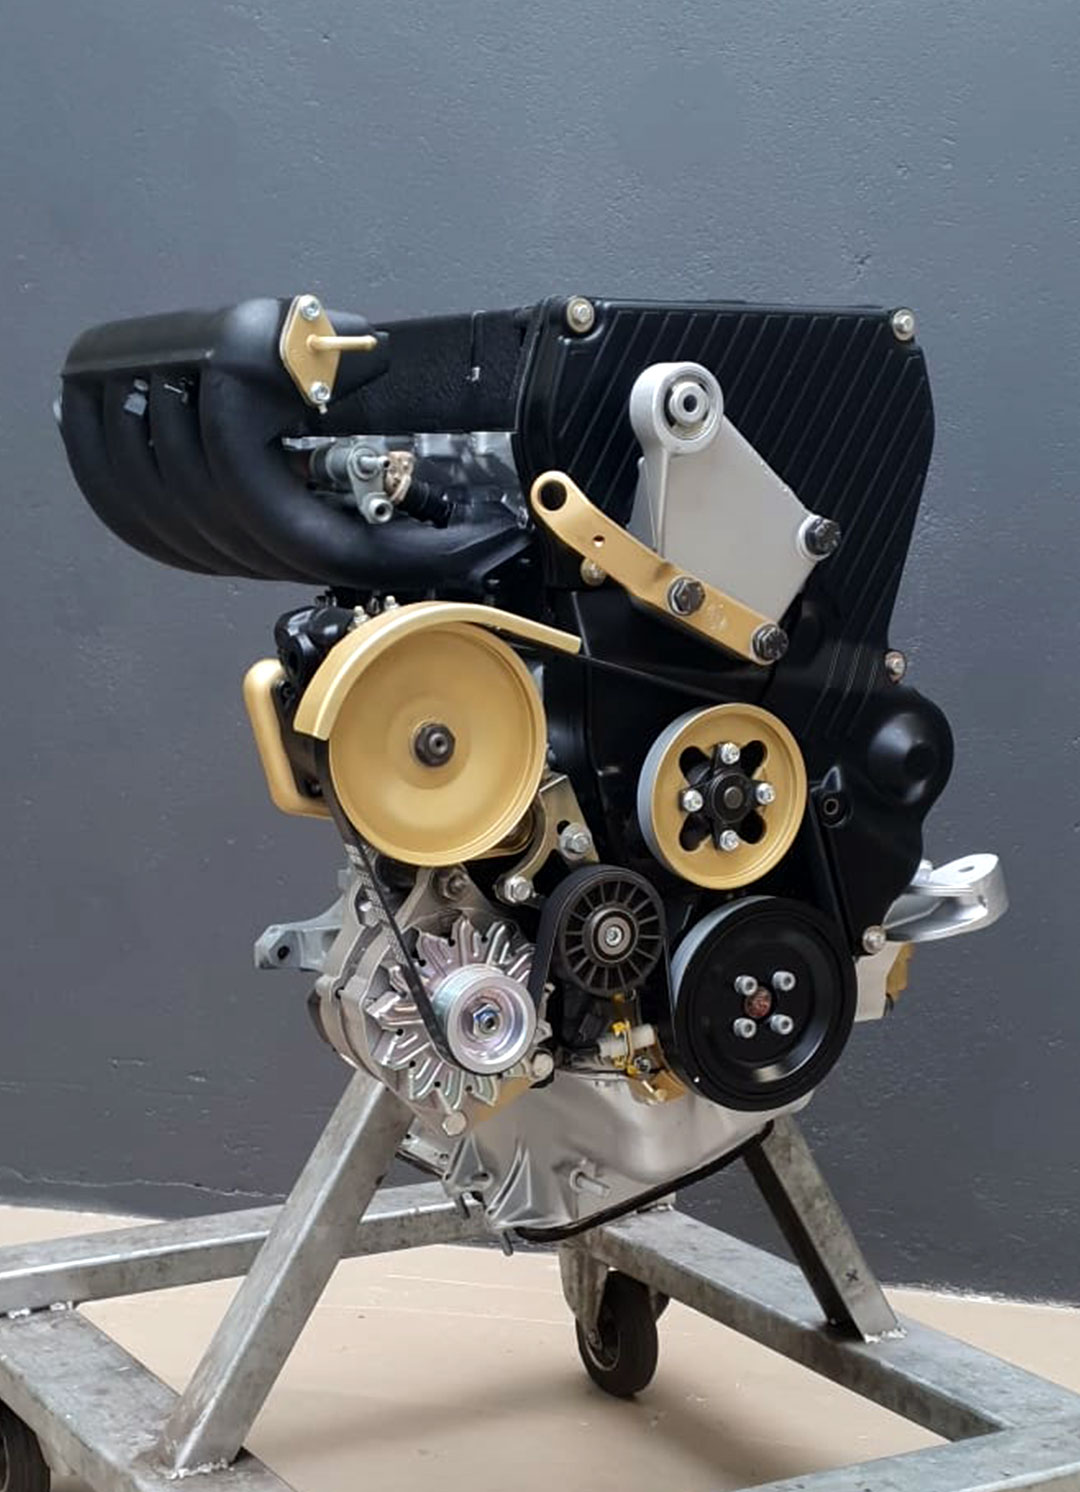 Lancia Delta Integrale engine rebuild and revision